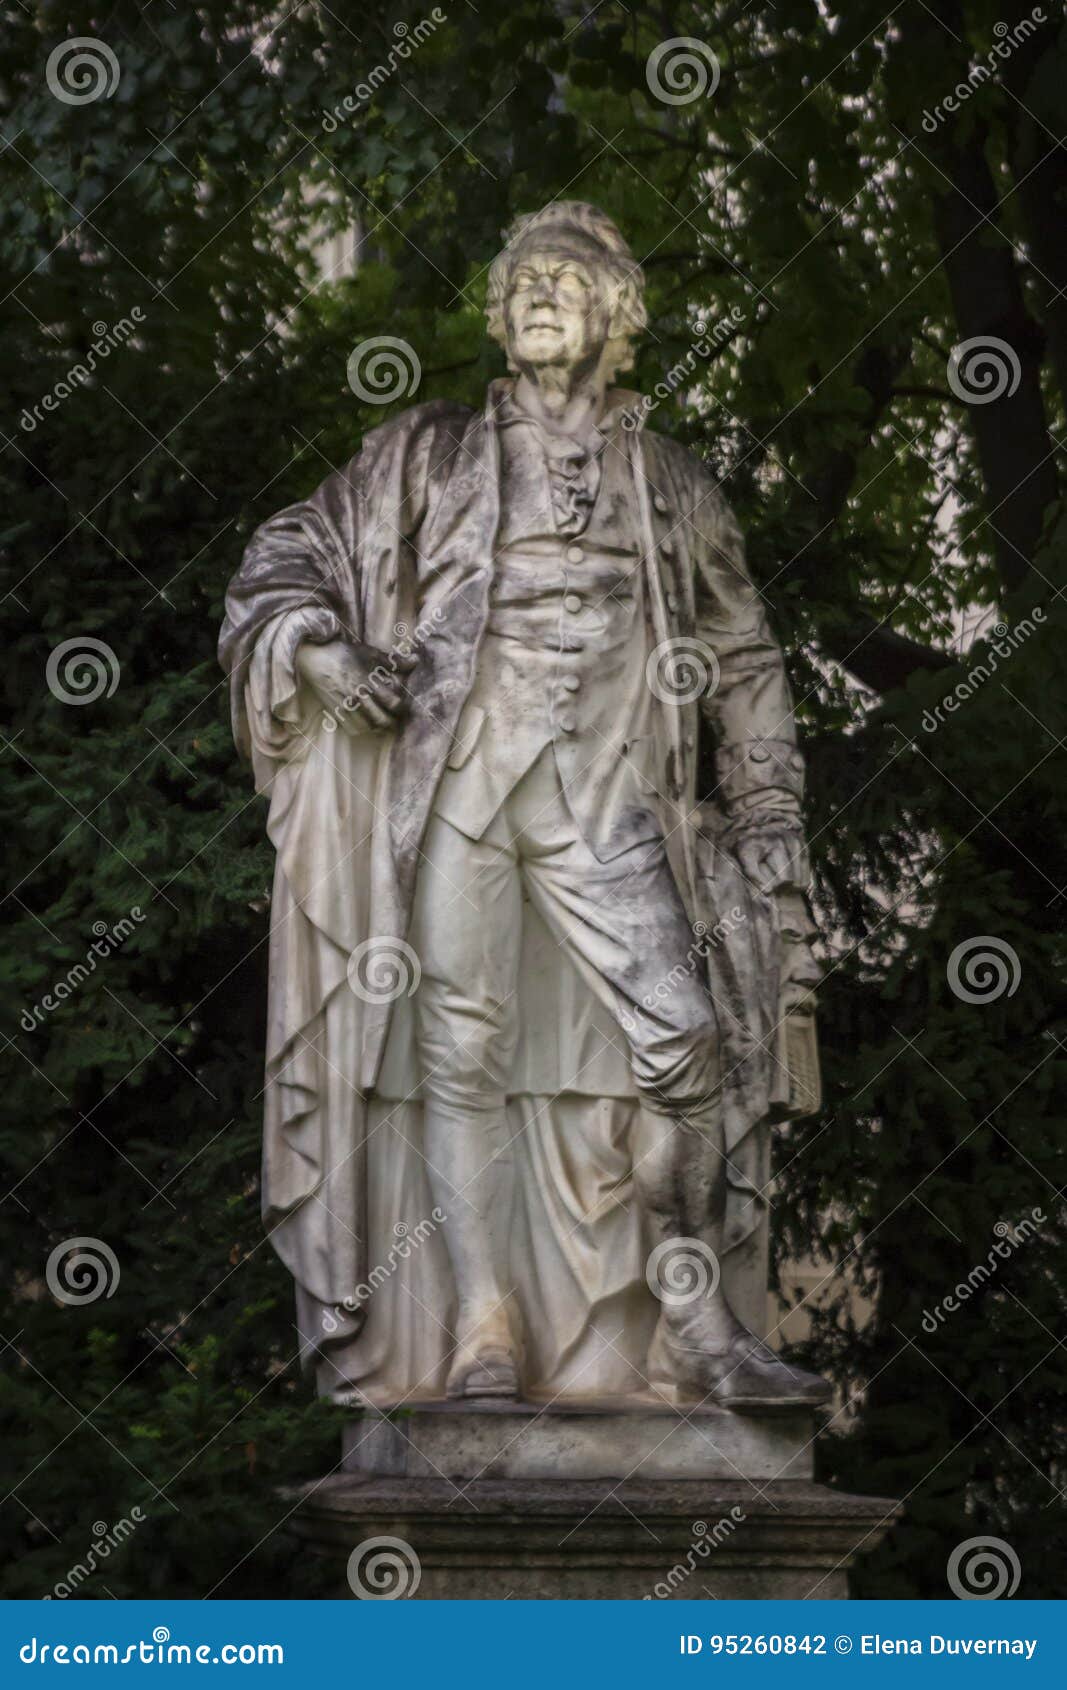 christoph willibald ritter von gluck statue, vienna, austria